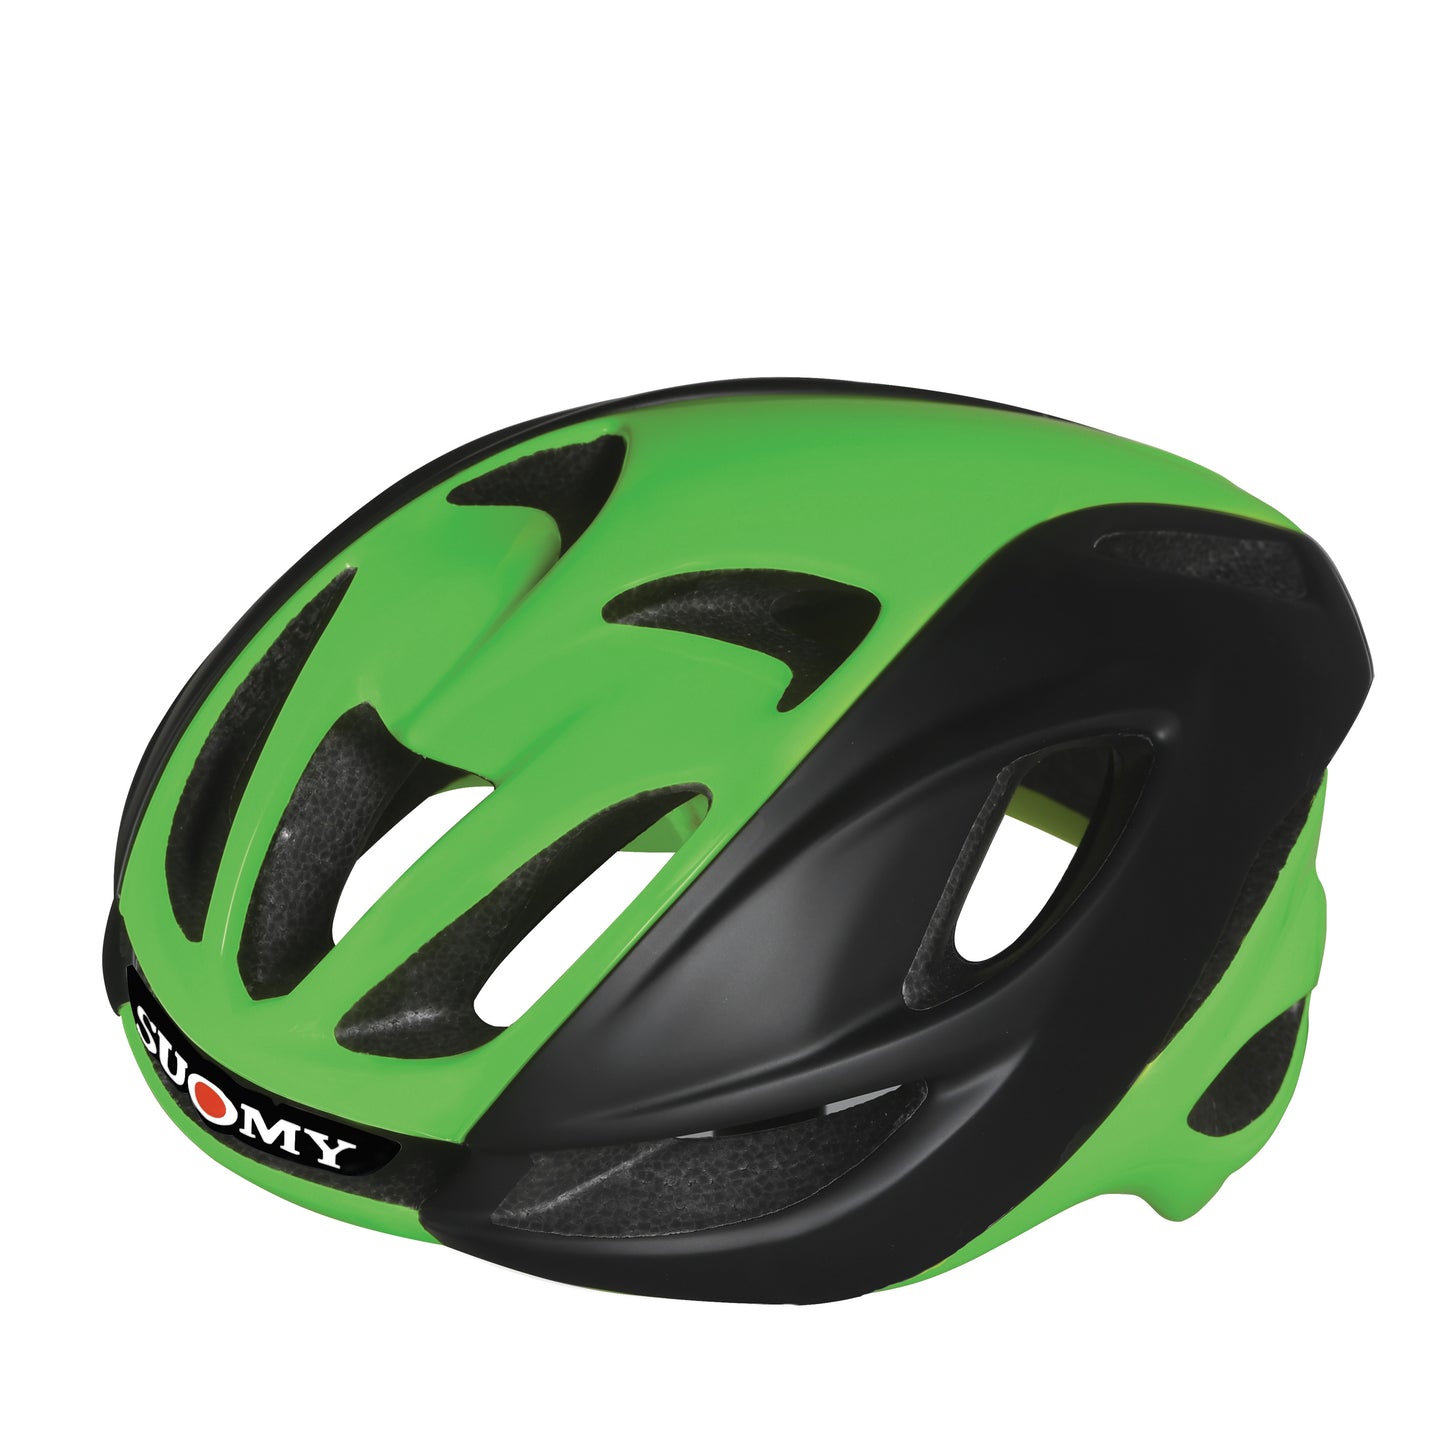 Helmet Suomy Glider Smart Strap Version